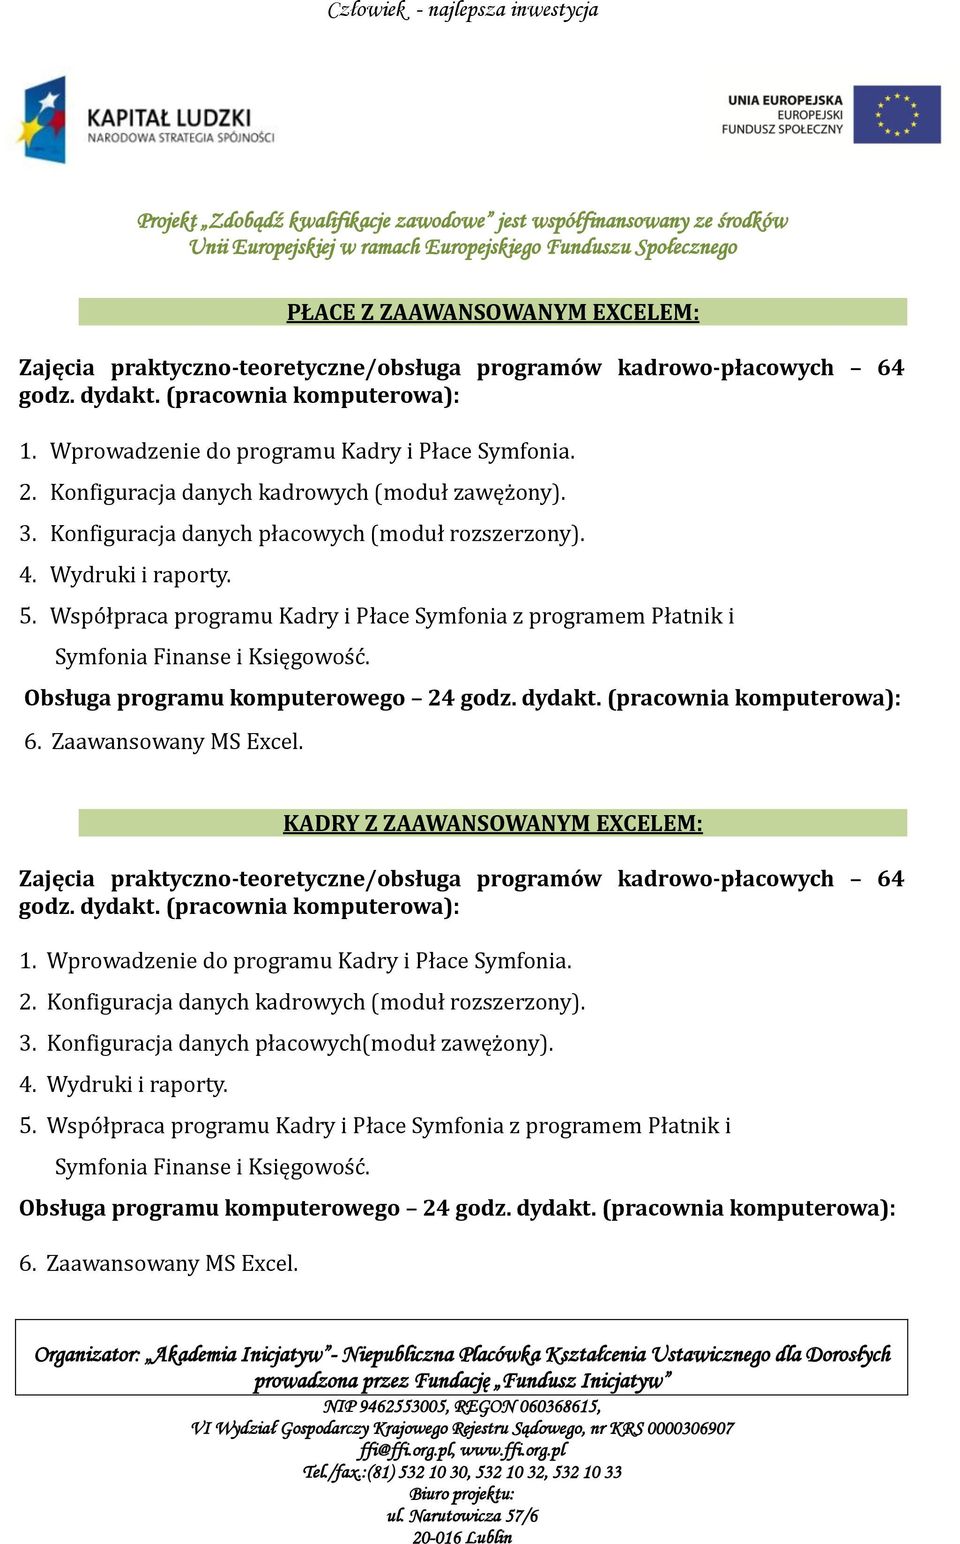 Współpraca programu Kadry i Płace Symfonia z programem Płatnik i Symfonia Finanse i Księgowość. 6. Zaawansowany MS Excel.